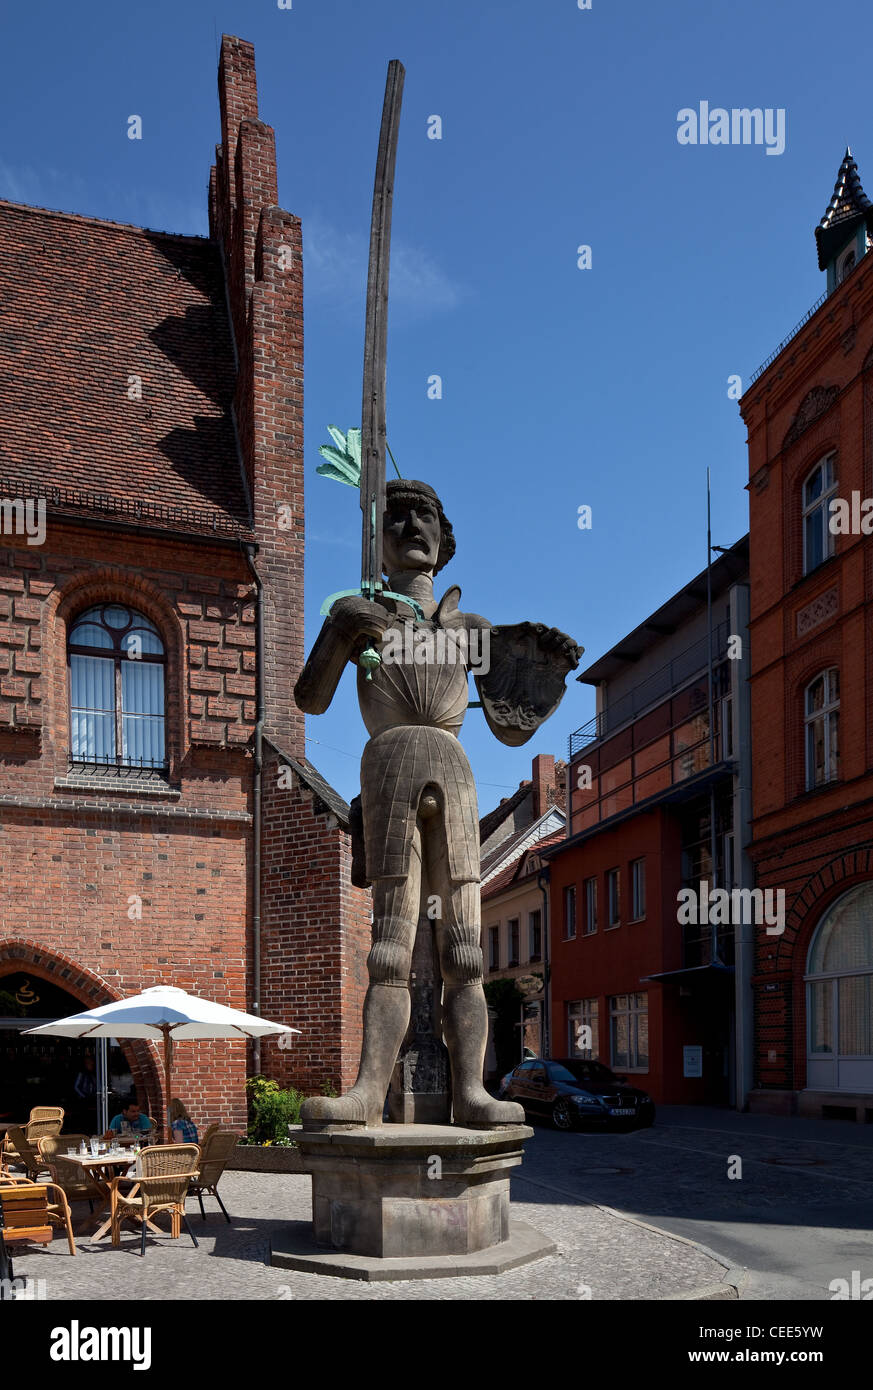 Stendal Rolandfigur vor dem Laubenflügel des Rathauses, errichtet 1525, Kopie 1974 m hölzernem (!) Richtschwert, Höhe 7,80 m Foto Stock